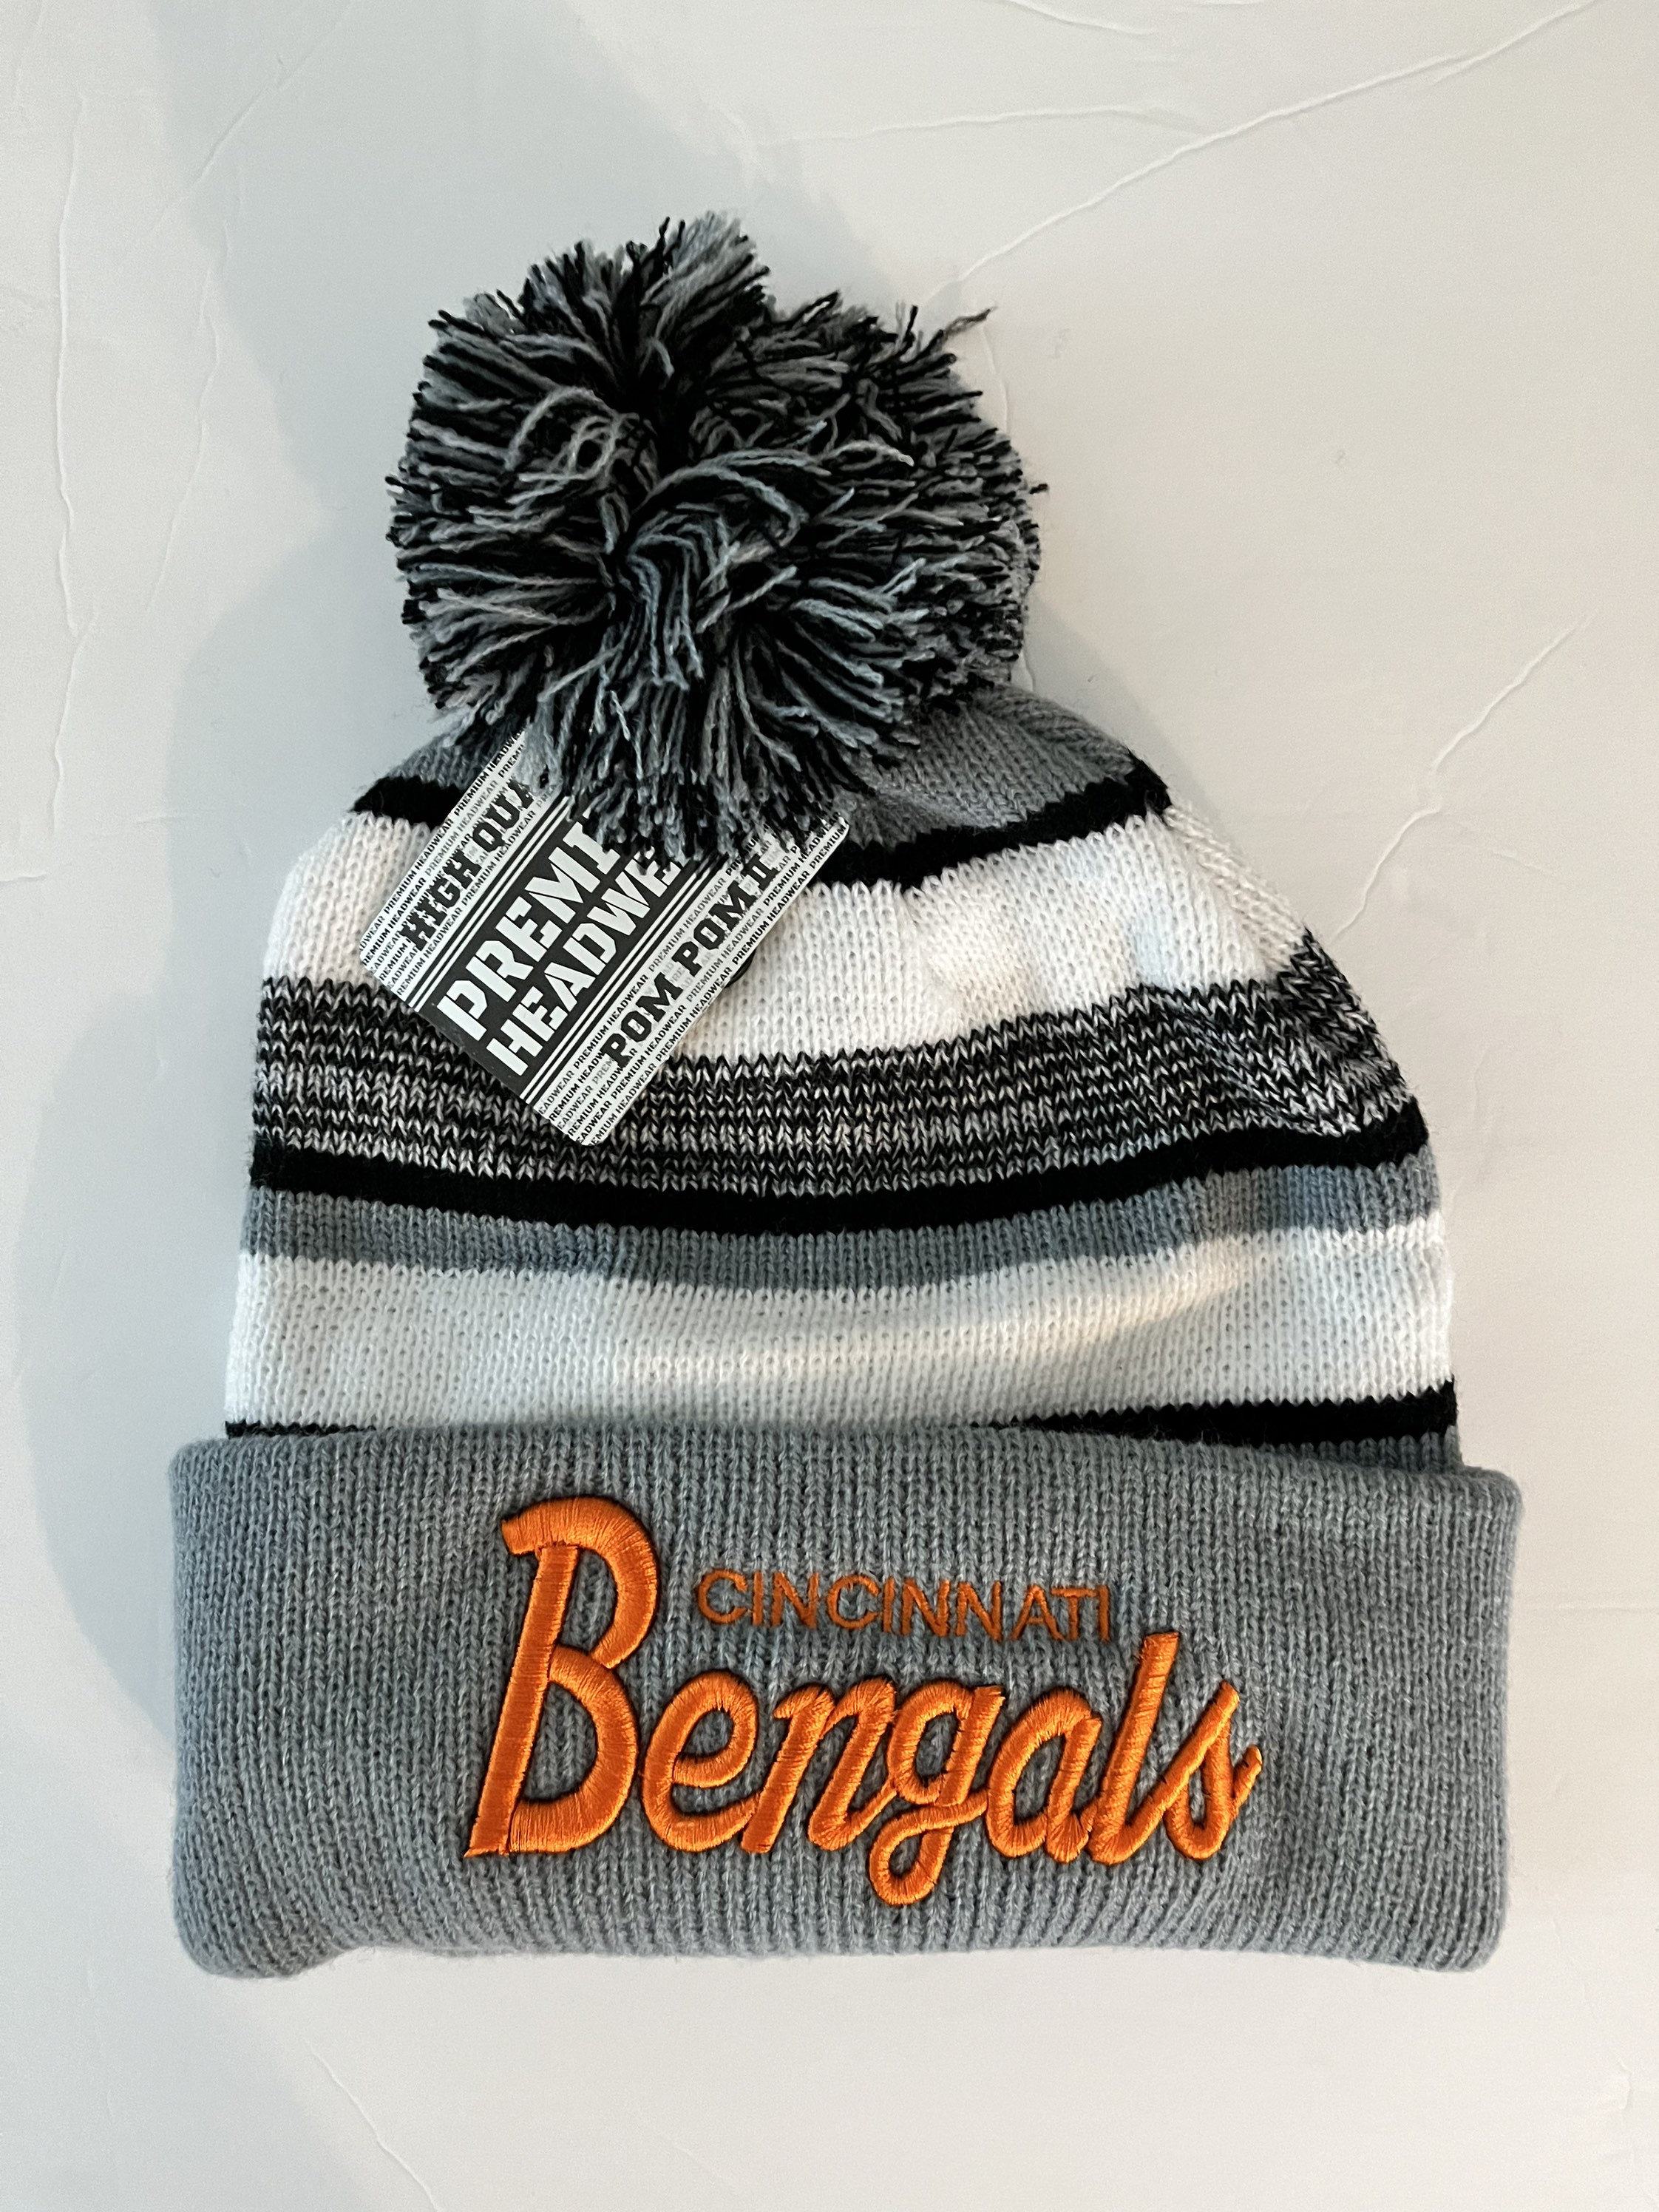 3'x5' Cincinnati Bengals Helmet Outdoor Flag - Football Flags